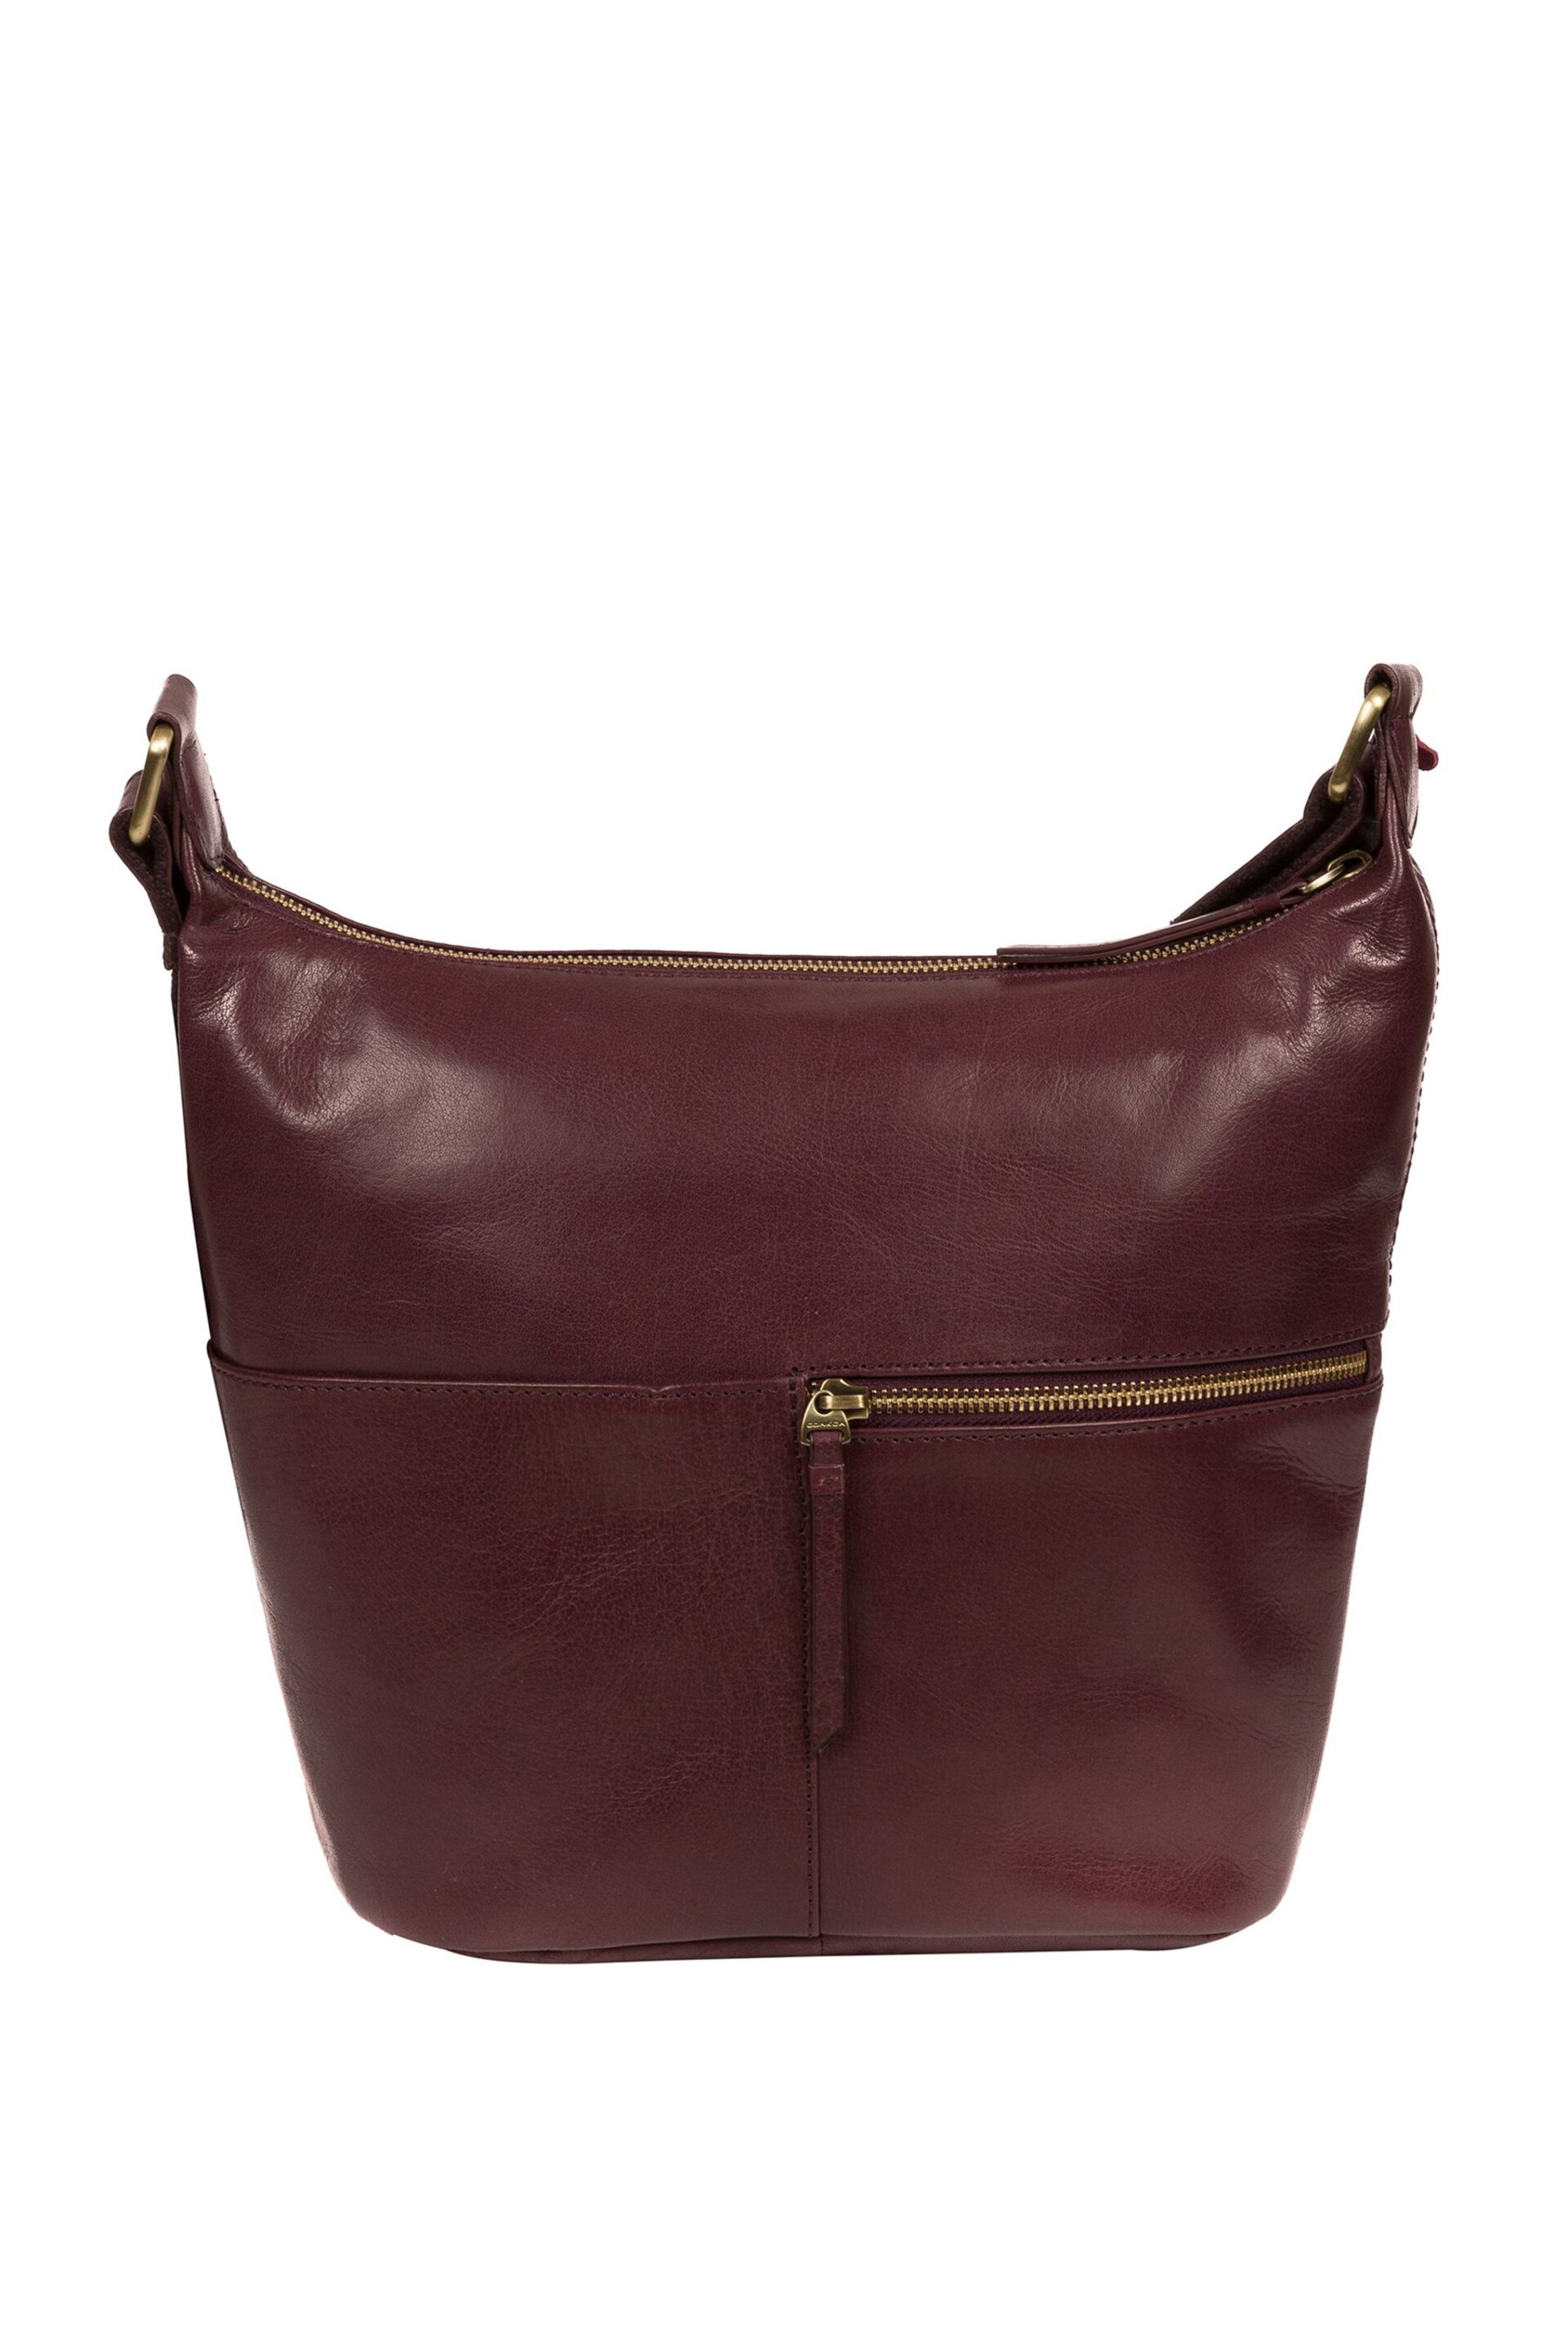 Conkca Kristin Leather Shoulder Bag - Image 2 of 5